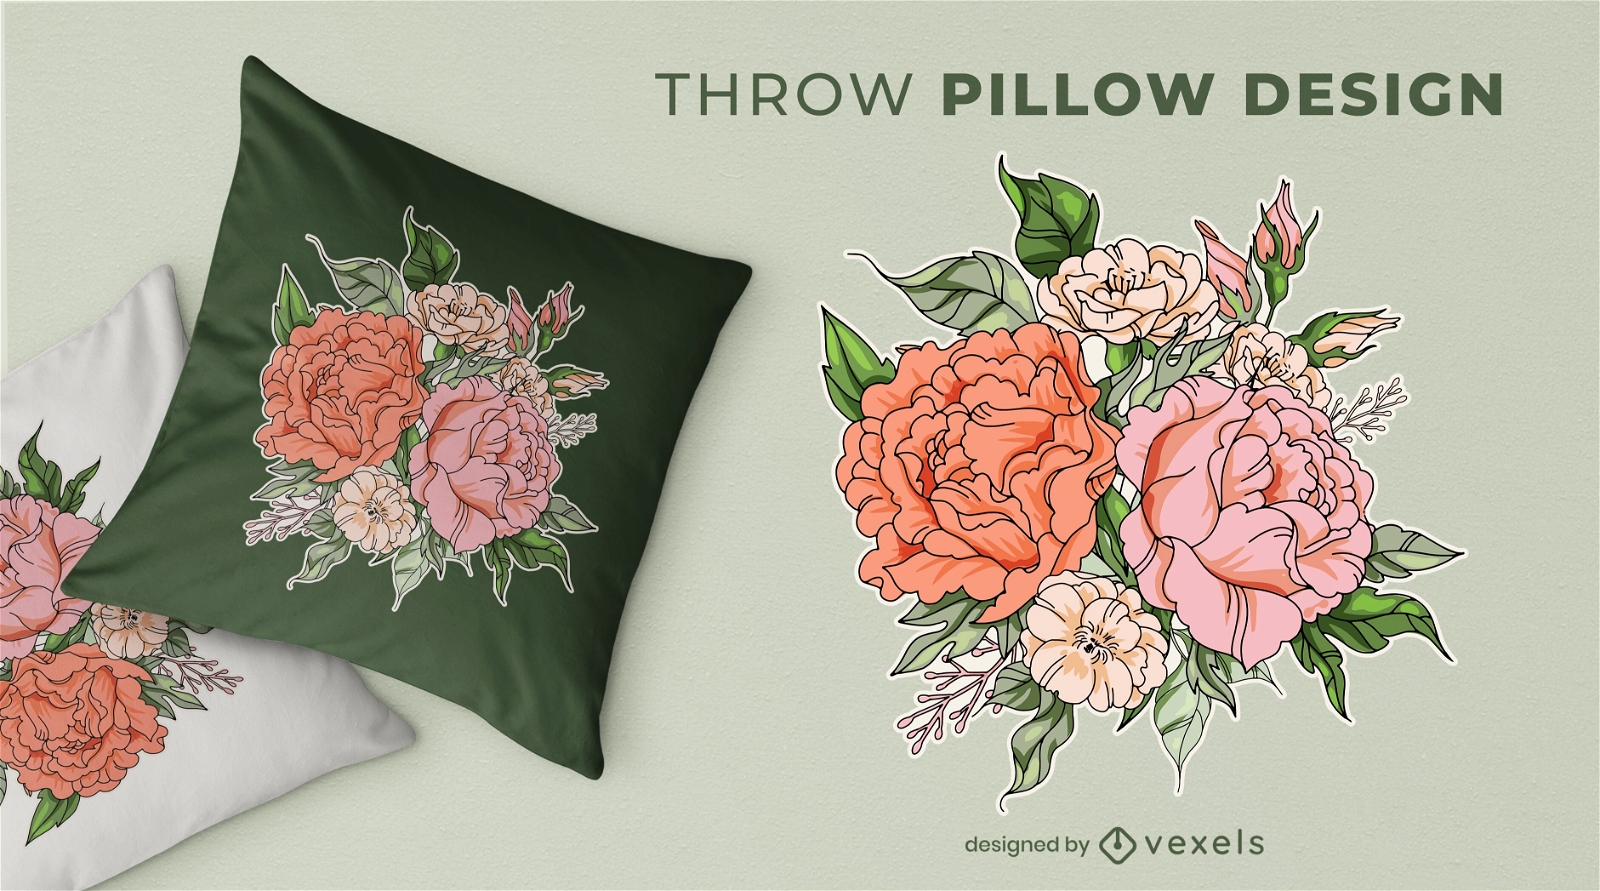 Diseño de almohada con ramo de flores.